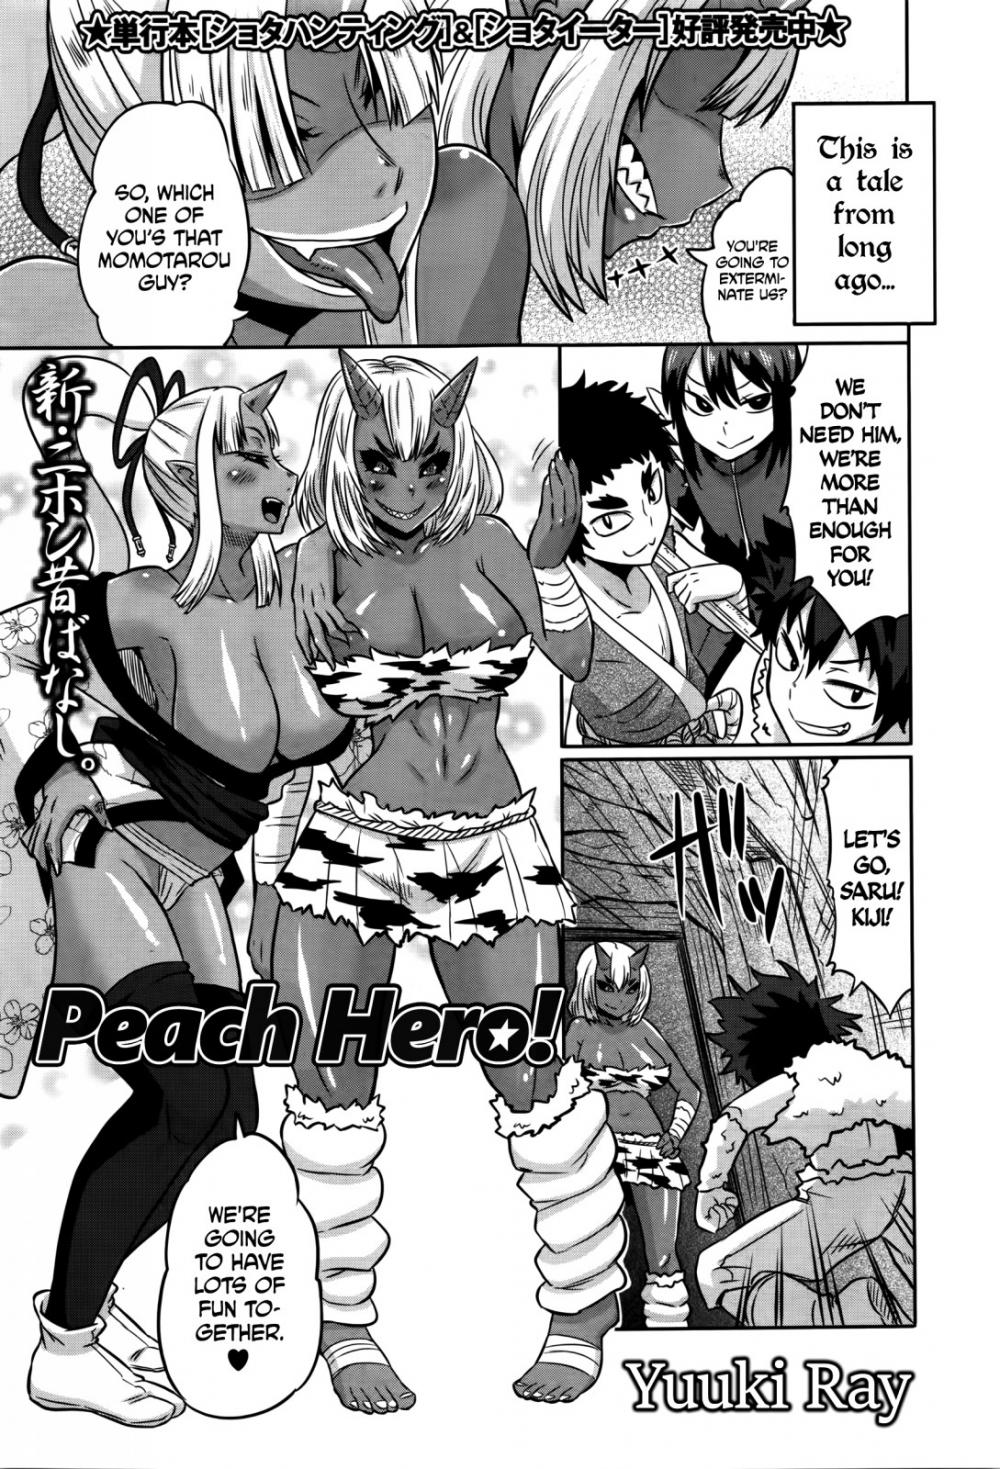 Hentai Manga Comic-Peach Hero!-Read-1